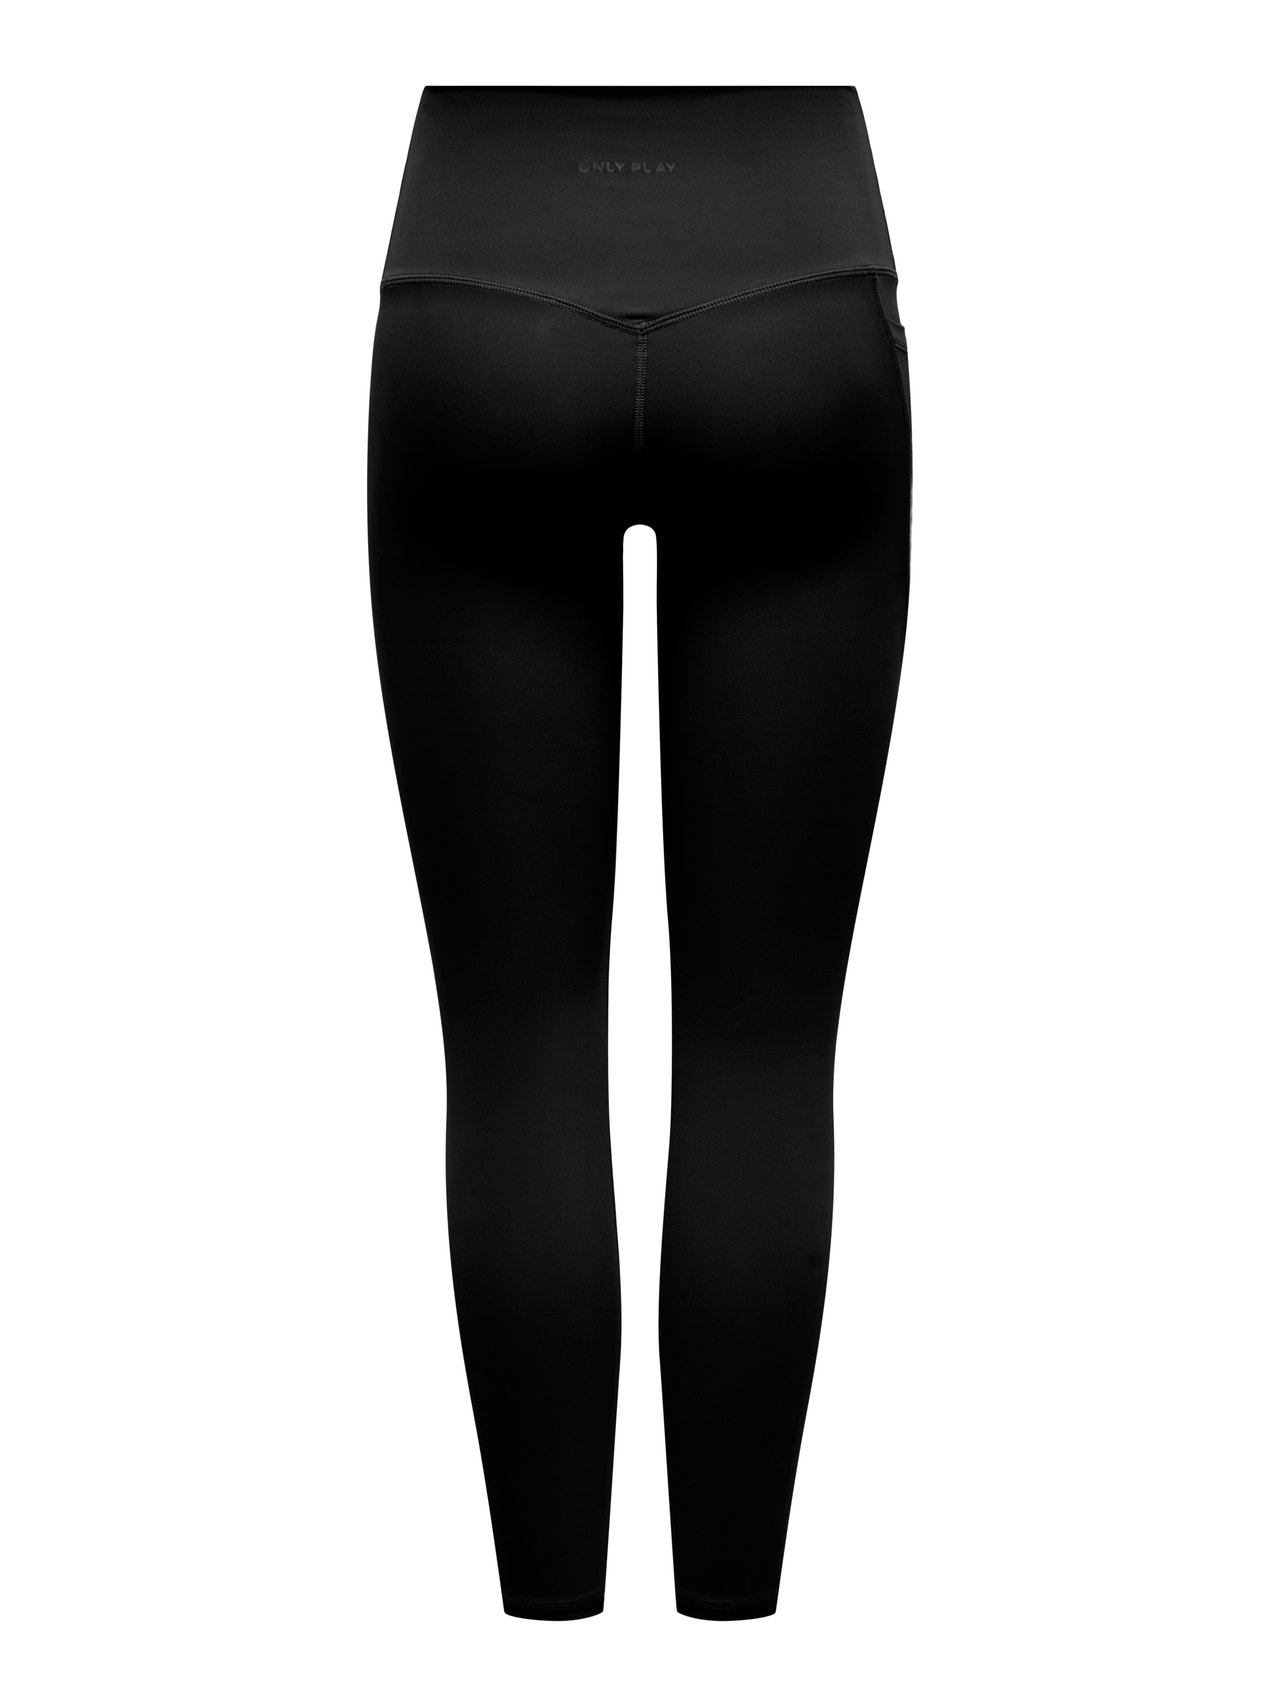 ONLY High waist training leggings -Black - 15303178